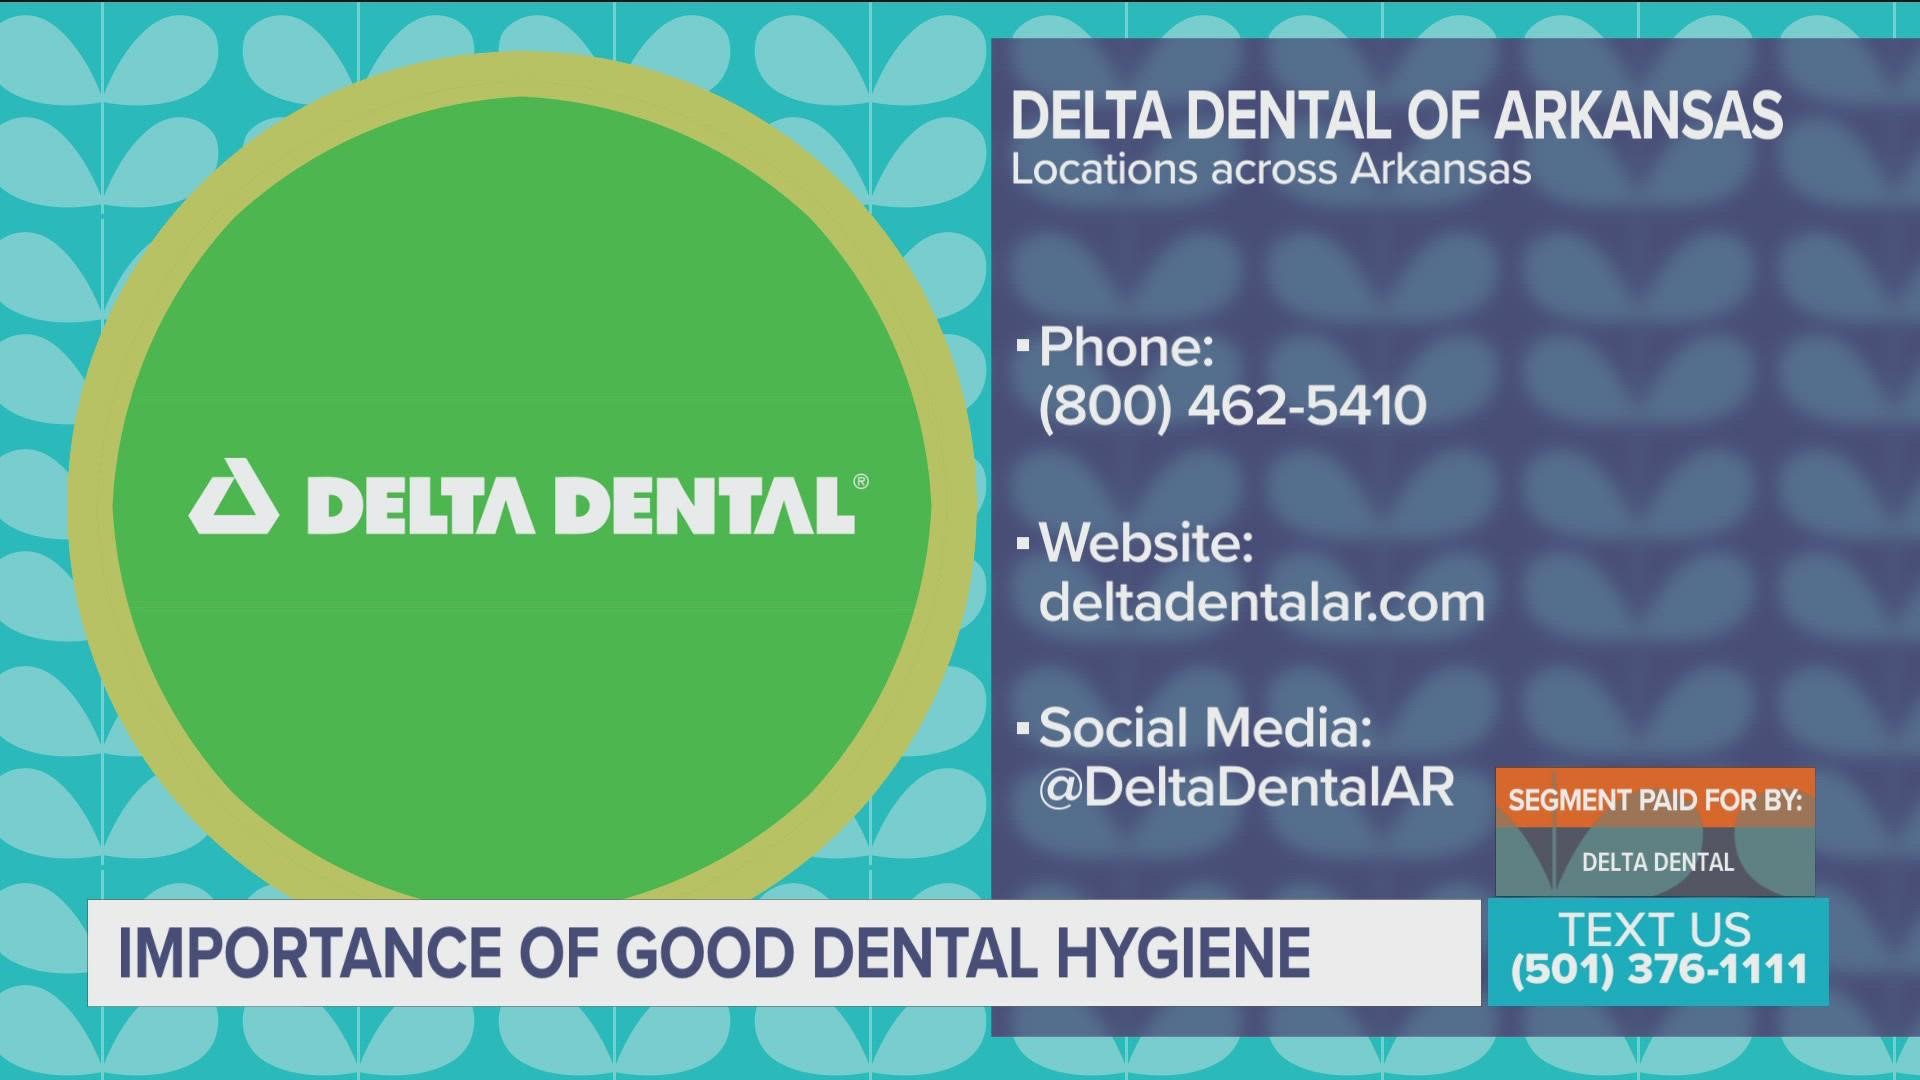 SEGMENT PAID FOR BY: Delta Dental of Arkansas. Learn more at deltadentalar.com